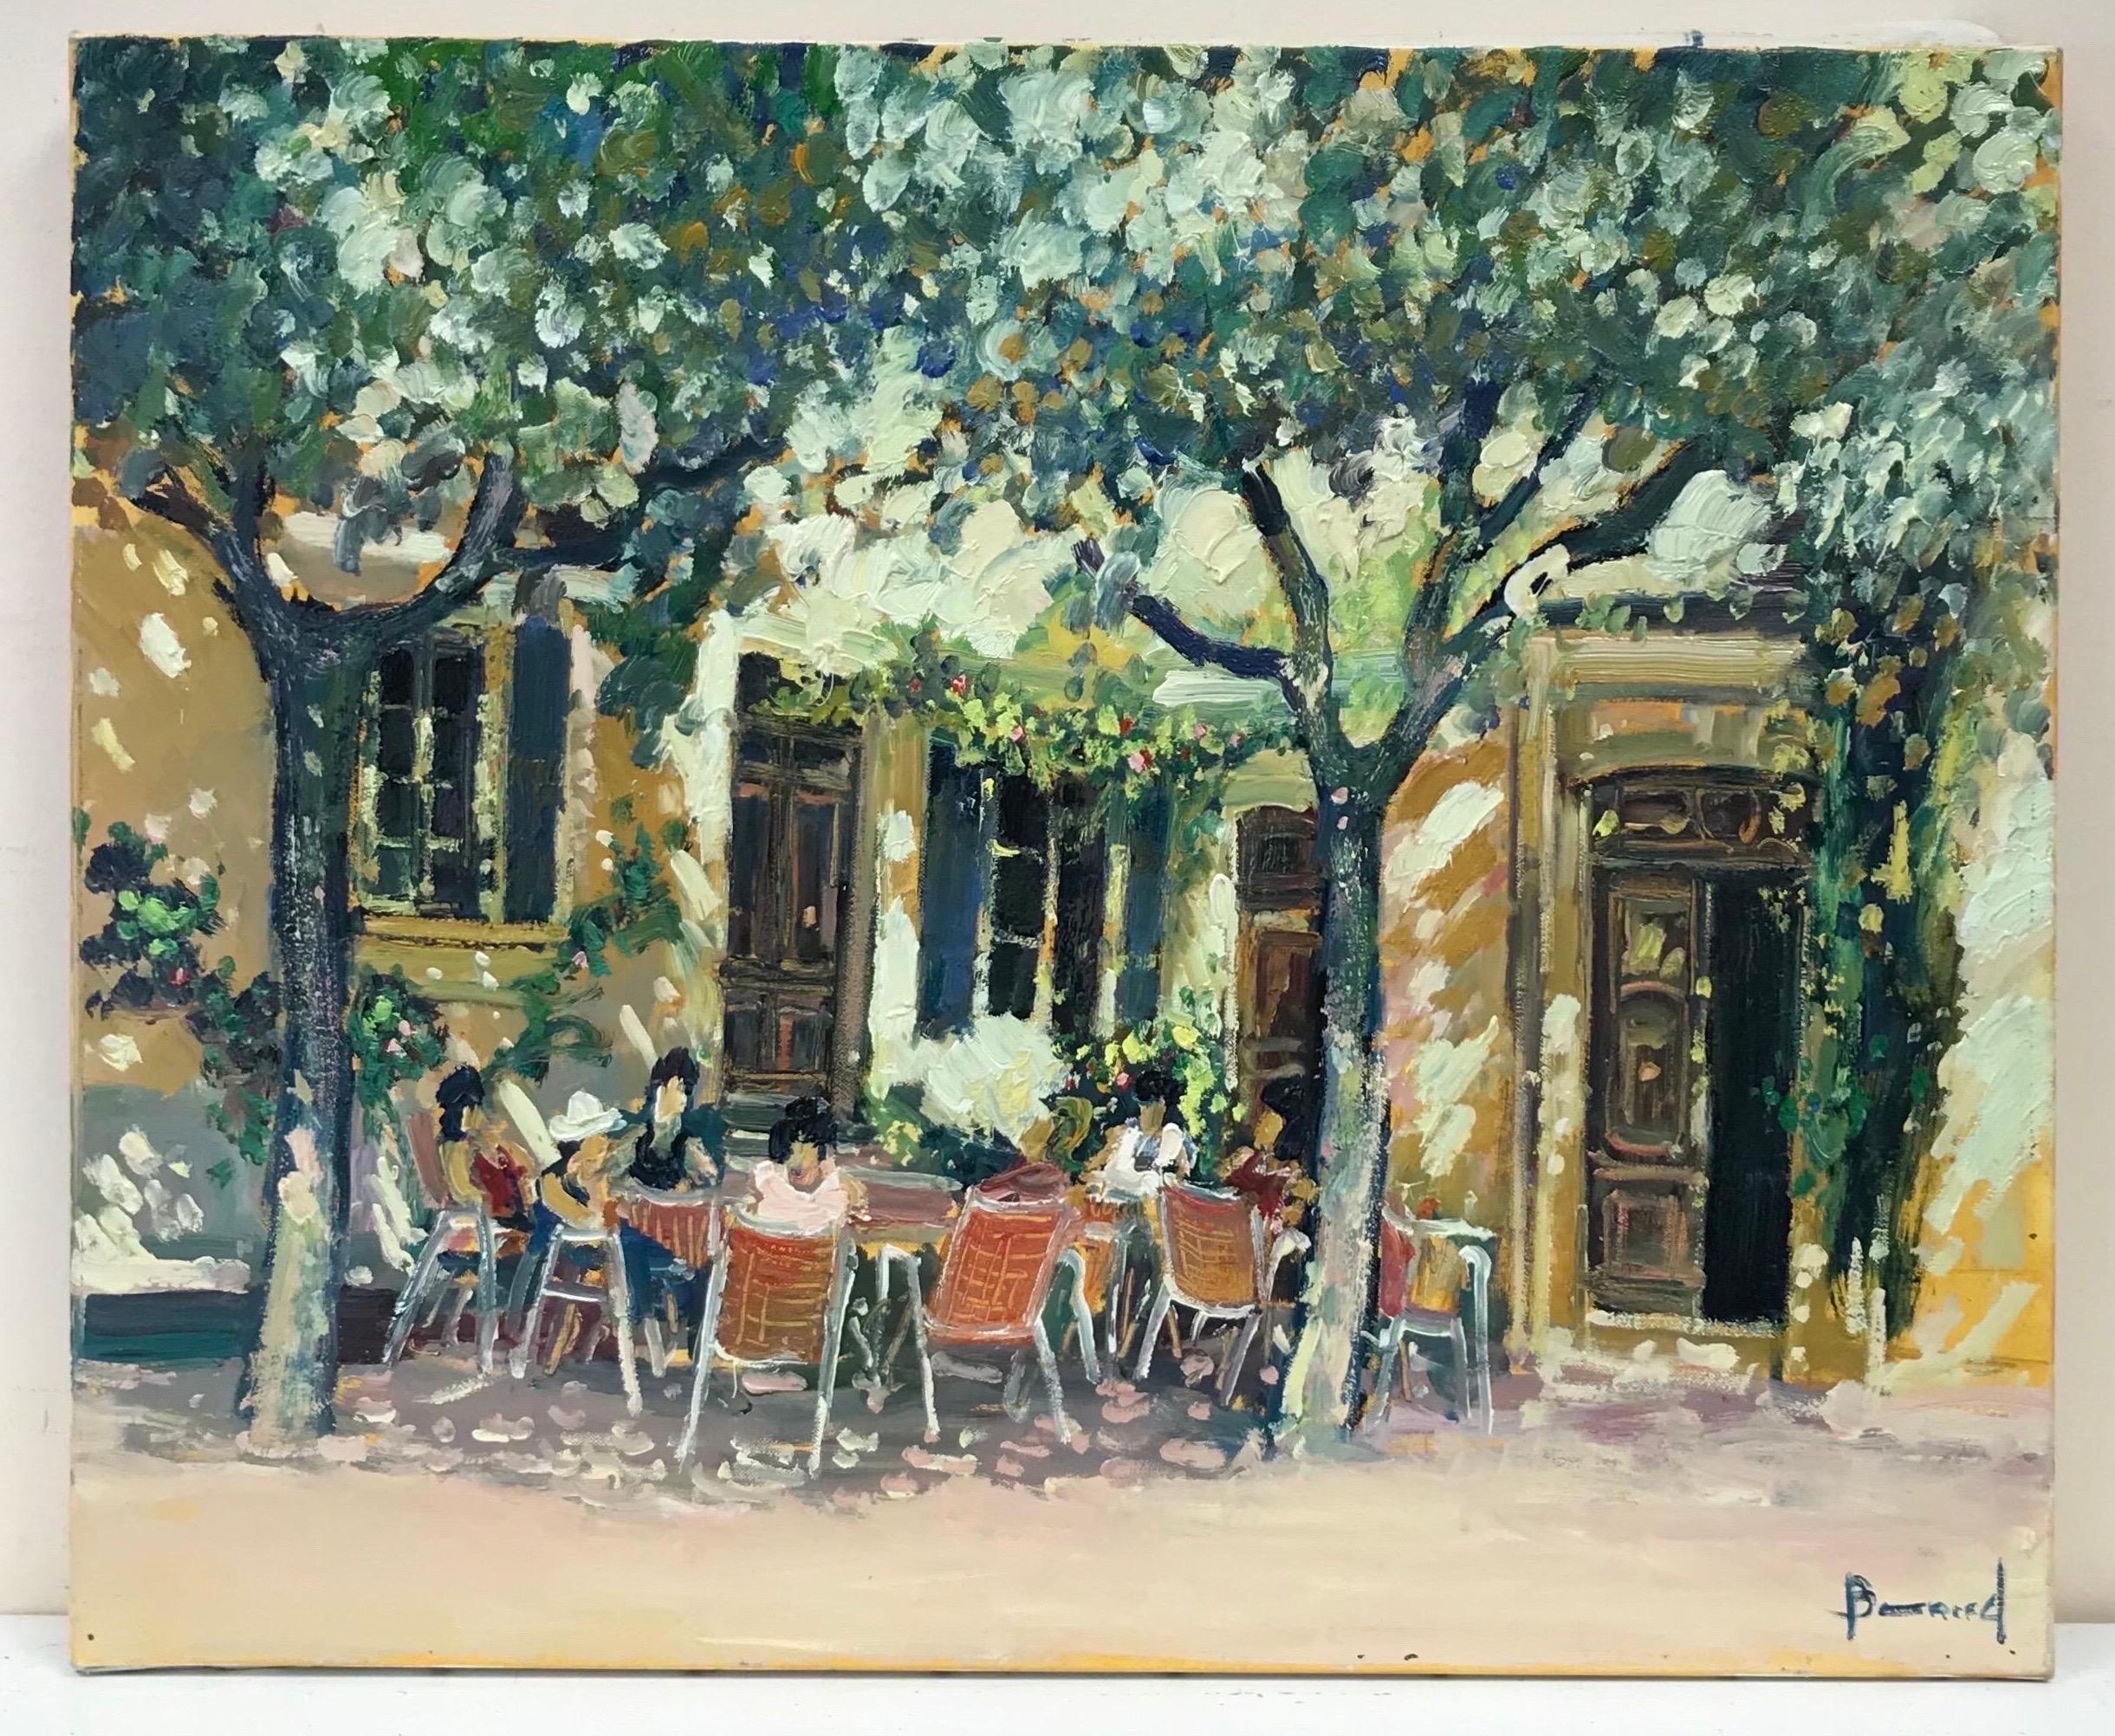 Tableau de café impressionniste français à l'huile d'une scène d'un café avec des personnages en Provence - Painting de Guy Benard